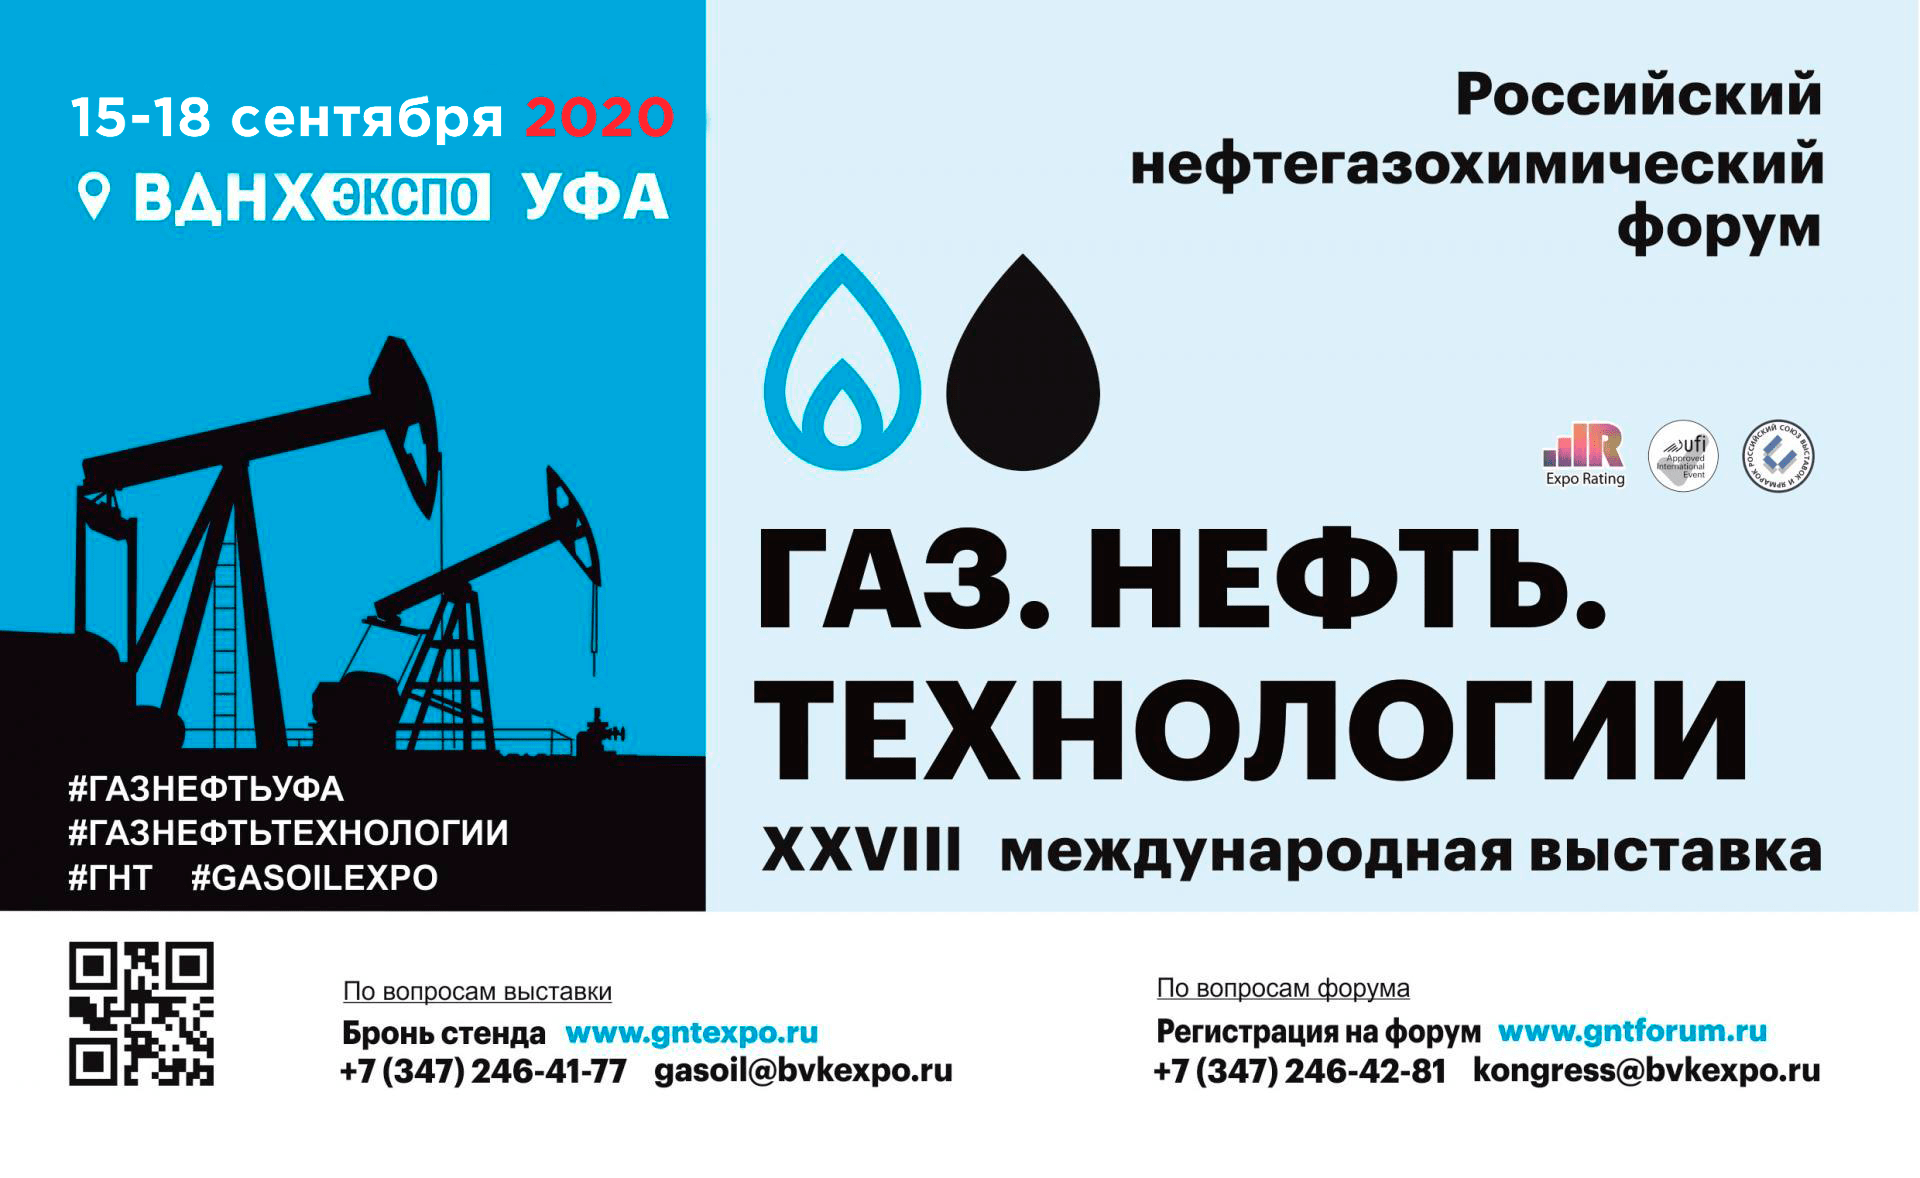 Выставка «Газ. Нефть. Технологии» пройдет в сентябре